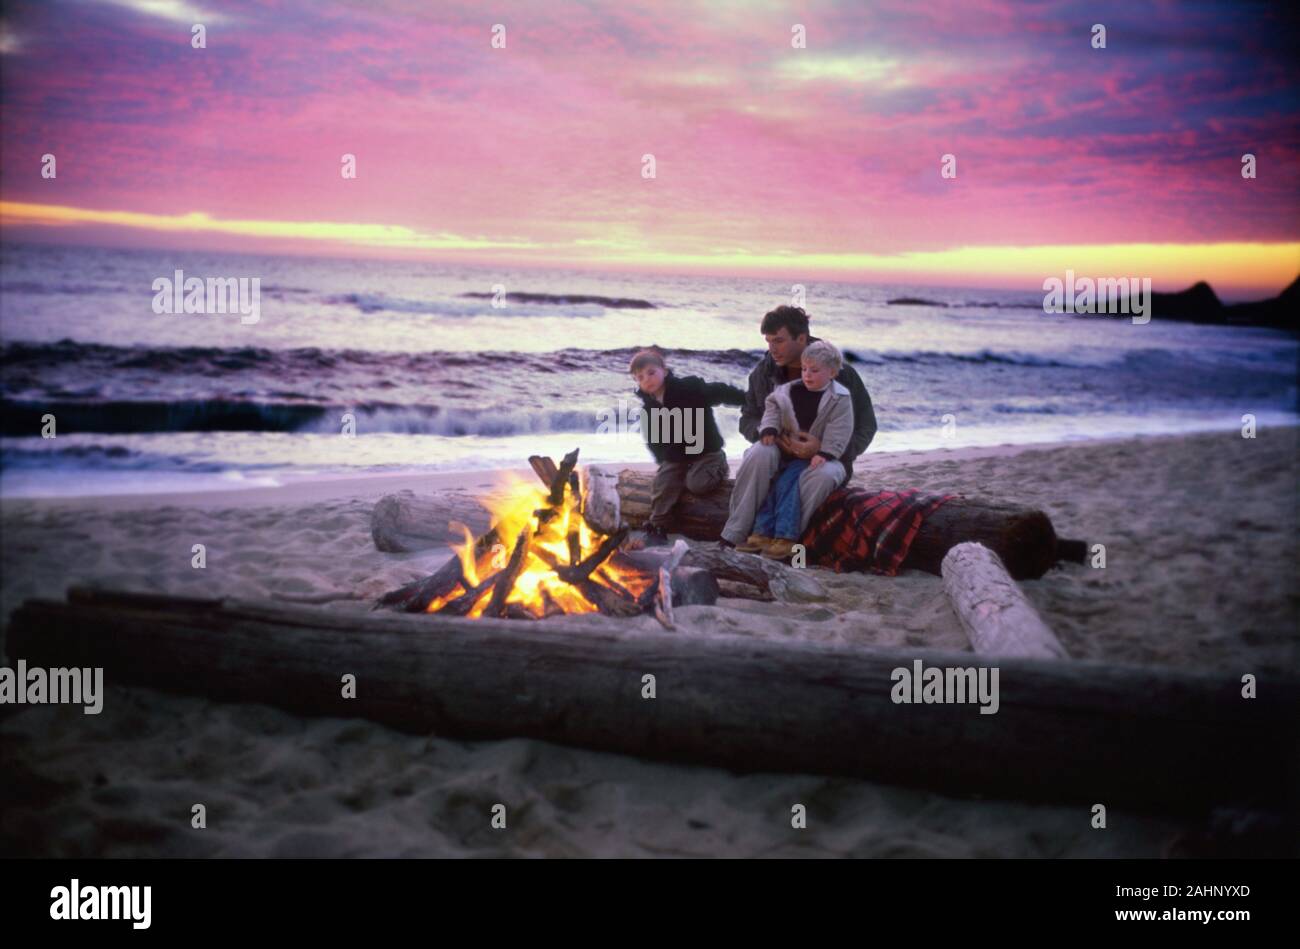 Un padre se sienta frente a un fuego con sus hijos en una playa pintoresca. Foto de stock